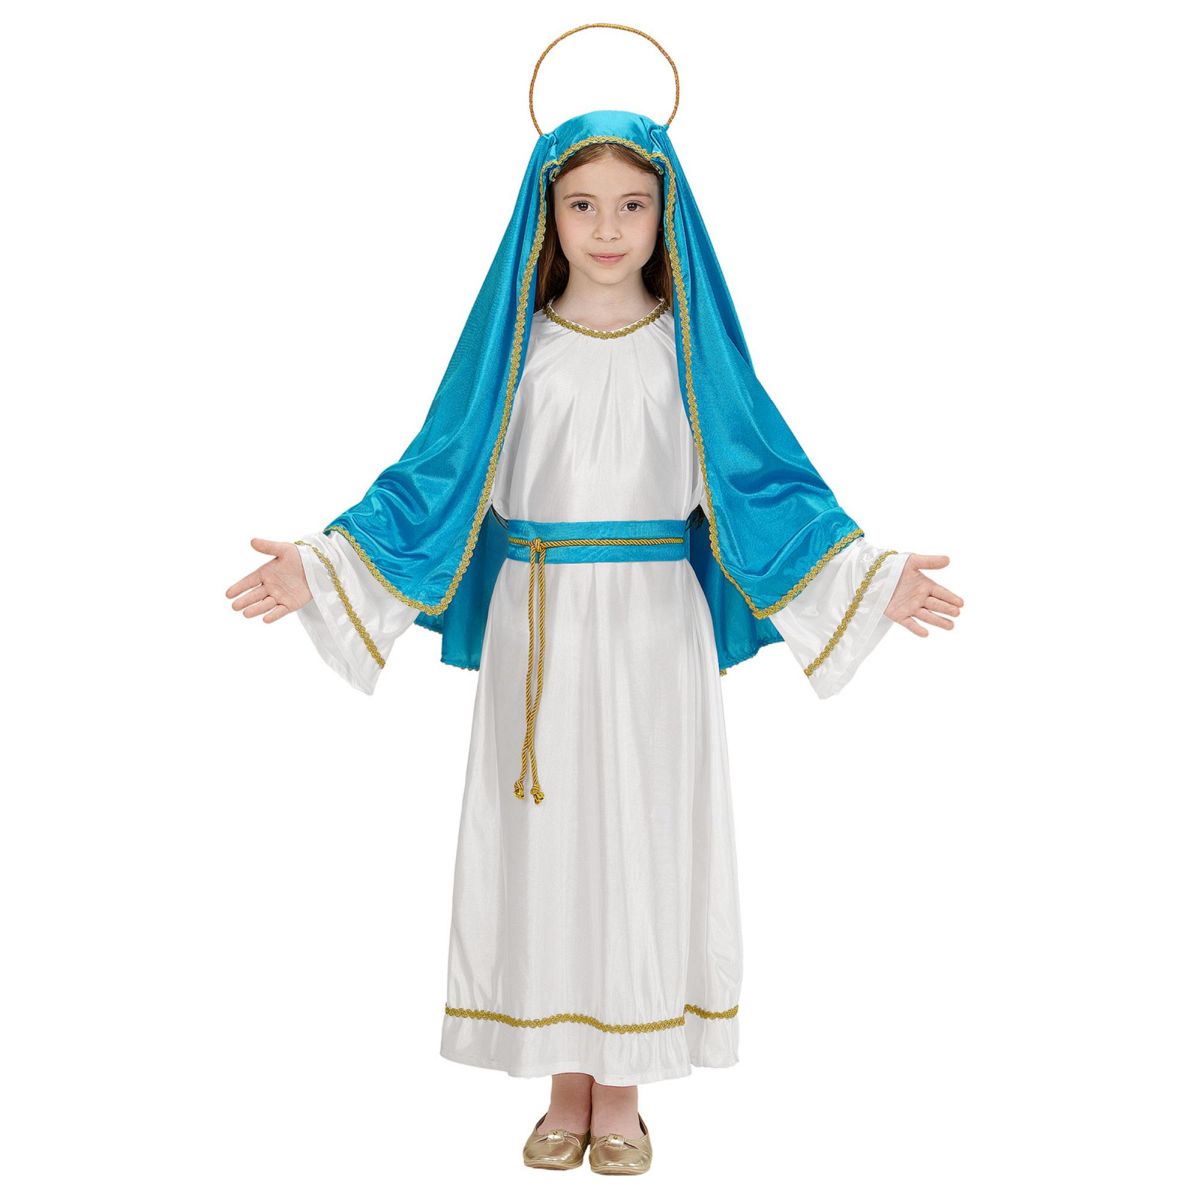 heilige Maria kostüm Tunika, Gürtel, Kopfbedeckung, Heiligenschein